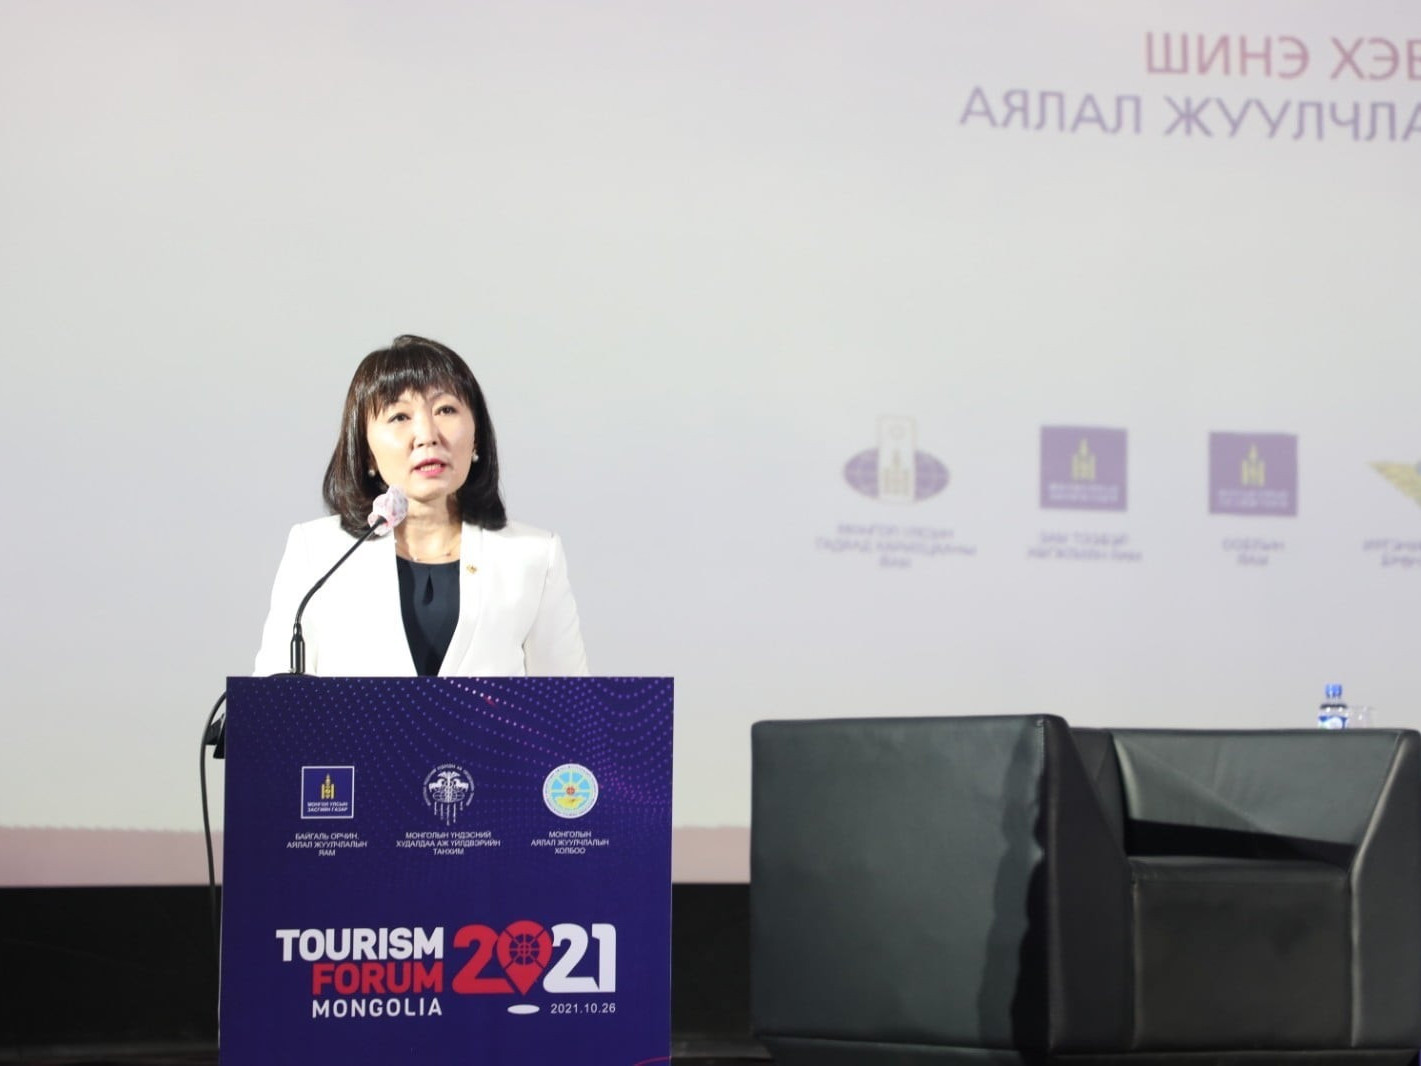 TOURISM FORUM 2021: Цар тахалд сөхөрсөн аялал жуулчлалынхан сэргэлтийн цэгээ тодорхойлж байна